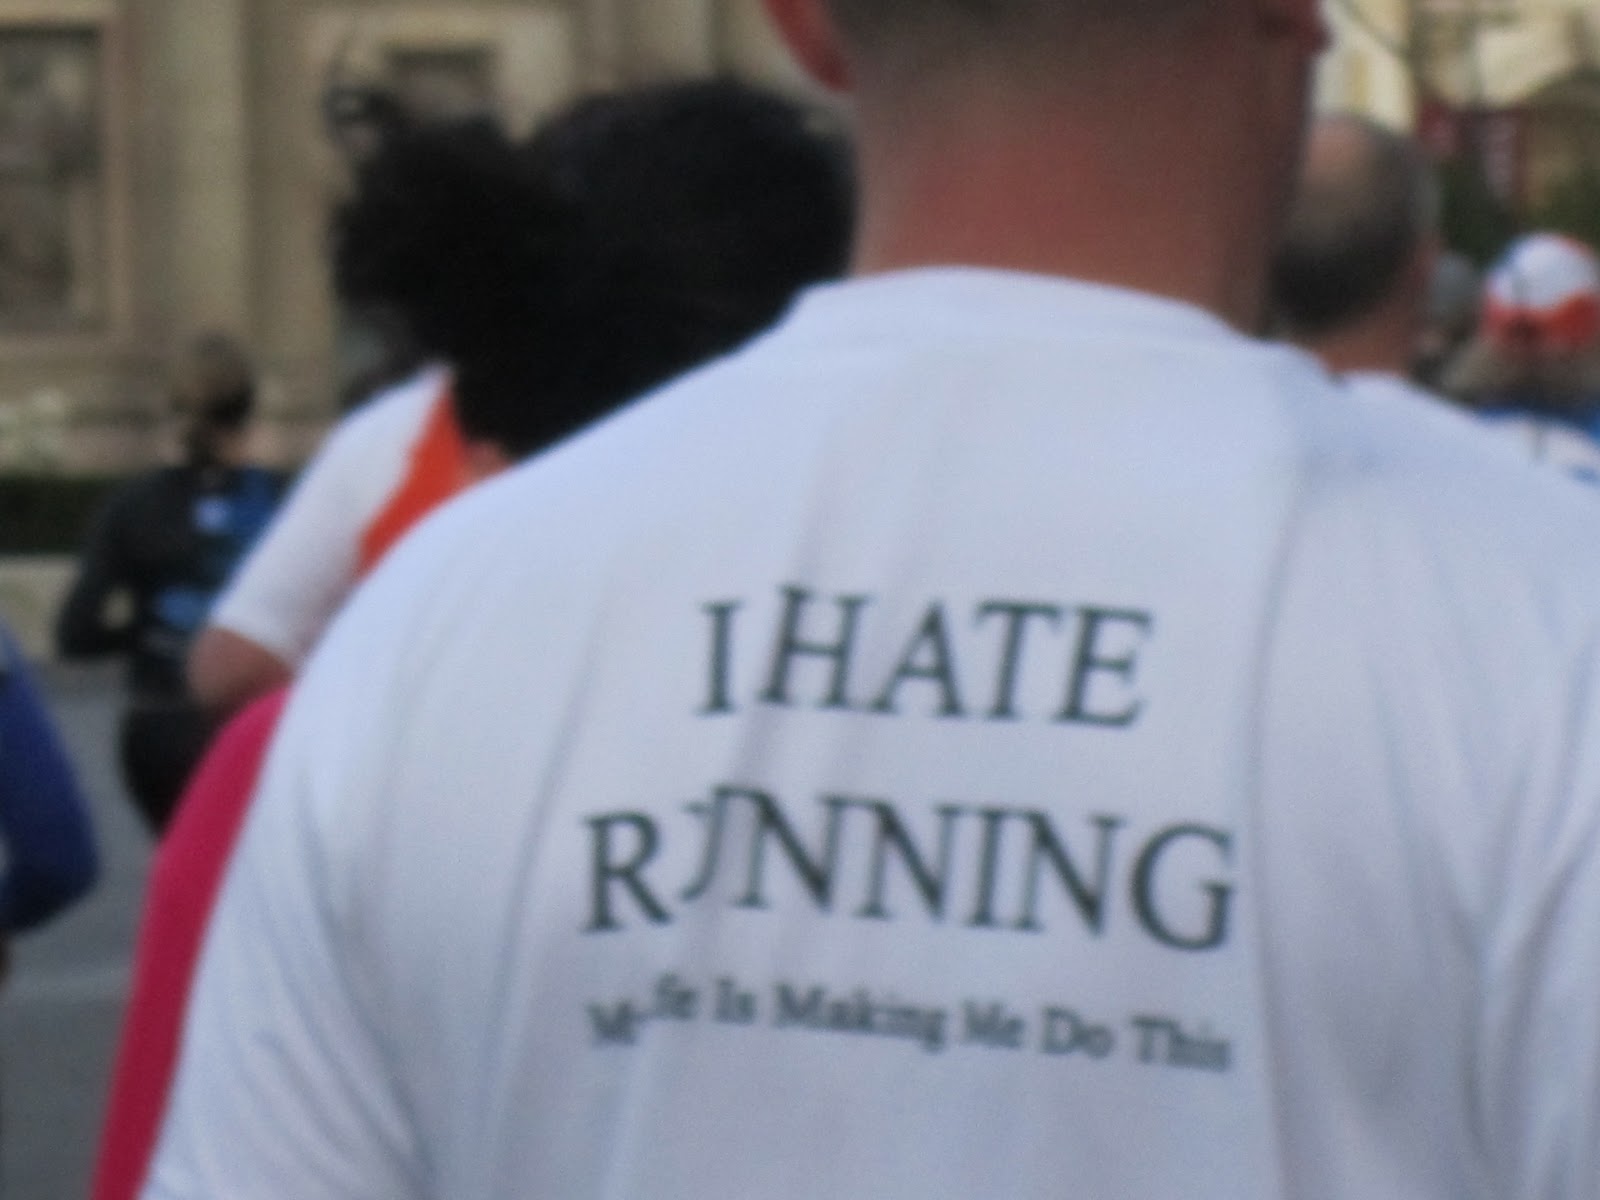 Marathon Running Quotes Funny. QuotesGram